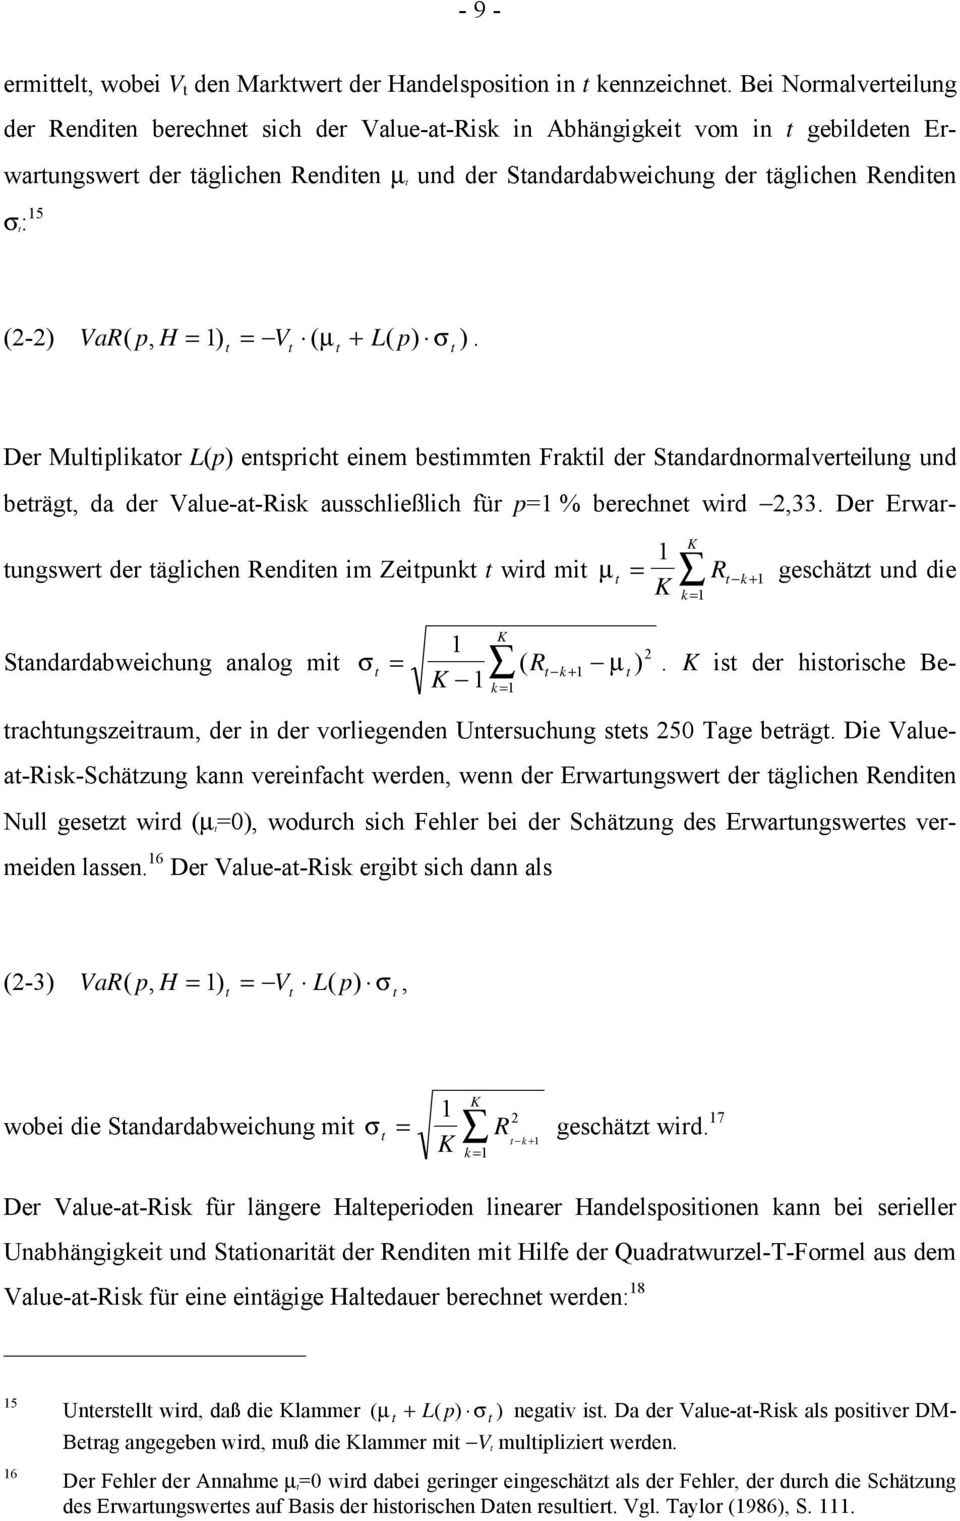 H = 1 ) = V ( µ + L( p) σ ). Der Muliplikaor L(p) ensprich einem besimmen Frakil der Sandardnormalvereilung und beräg, da der Value-a-Risk ausschließlich für p=1 % berechne wird 2,33.